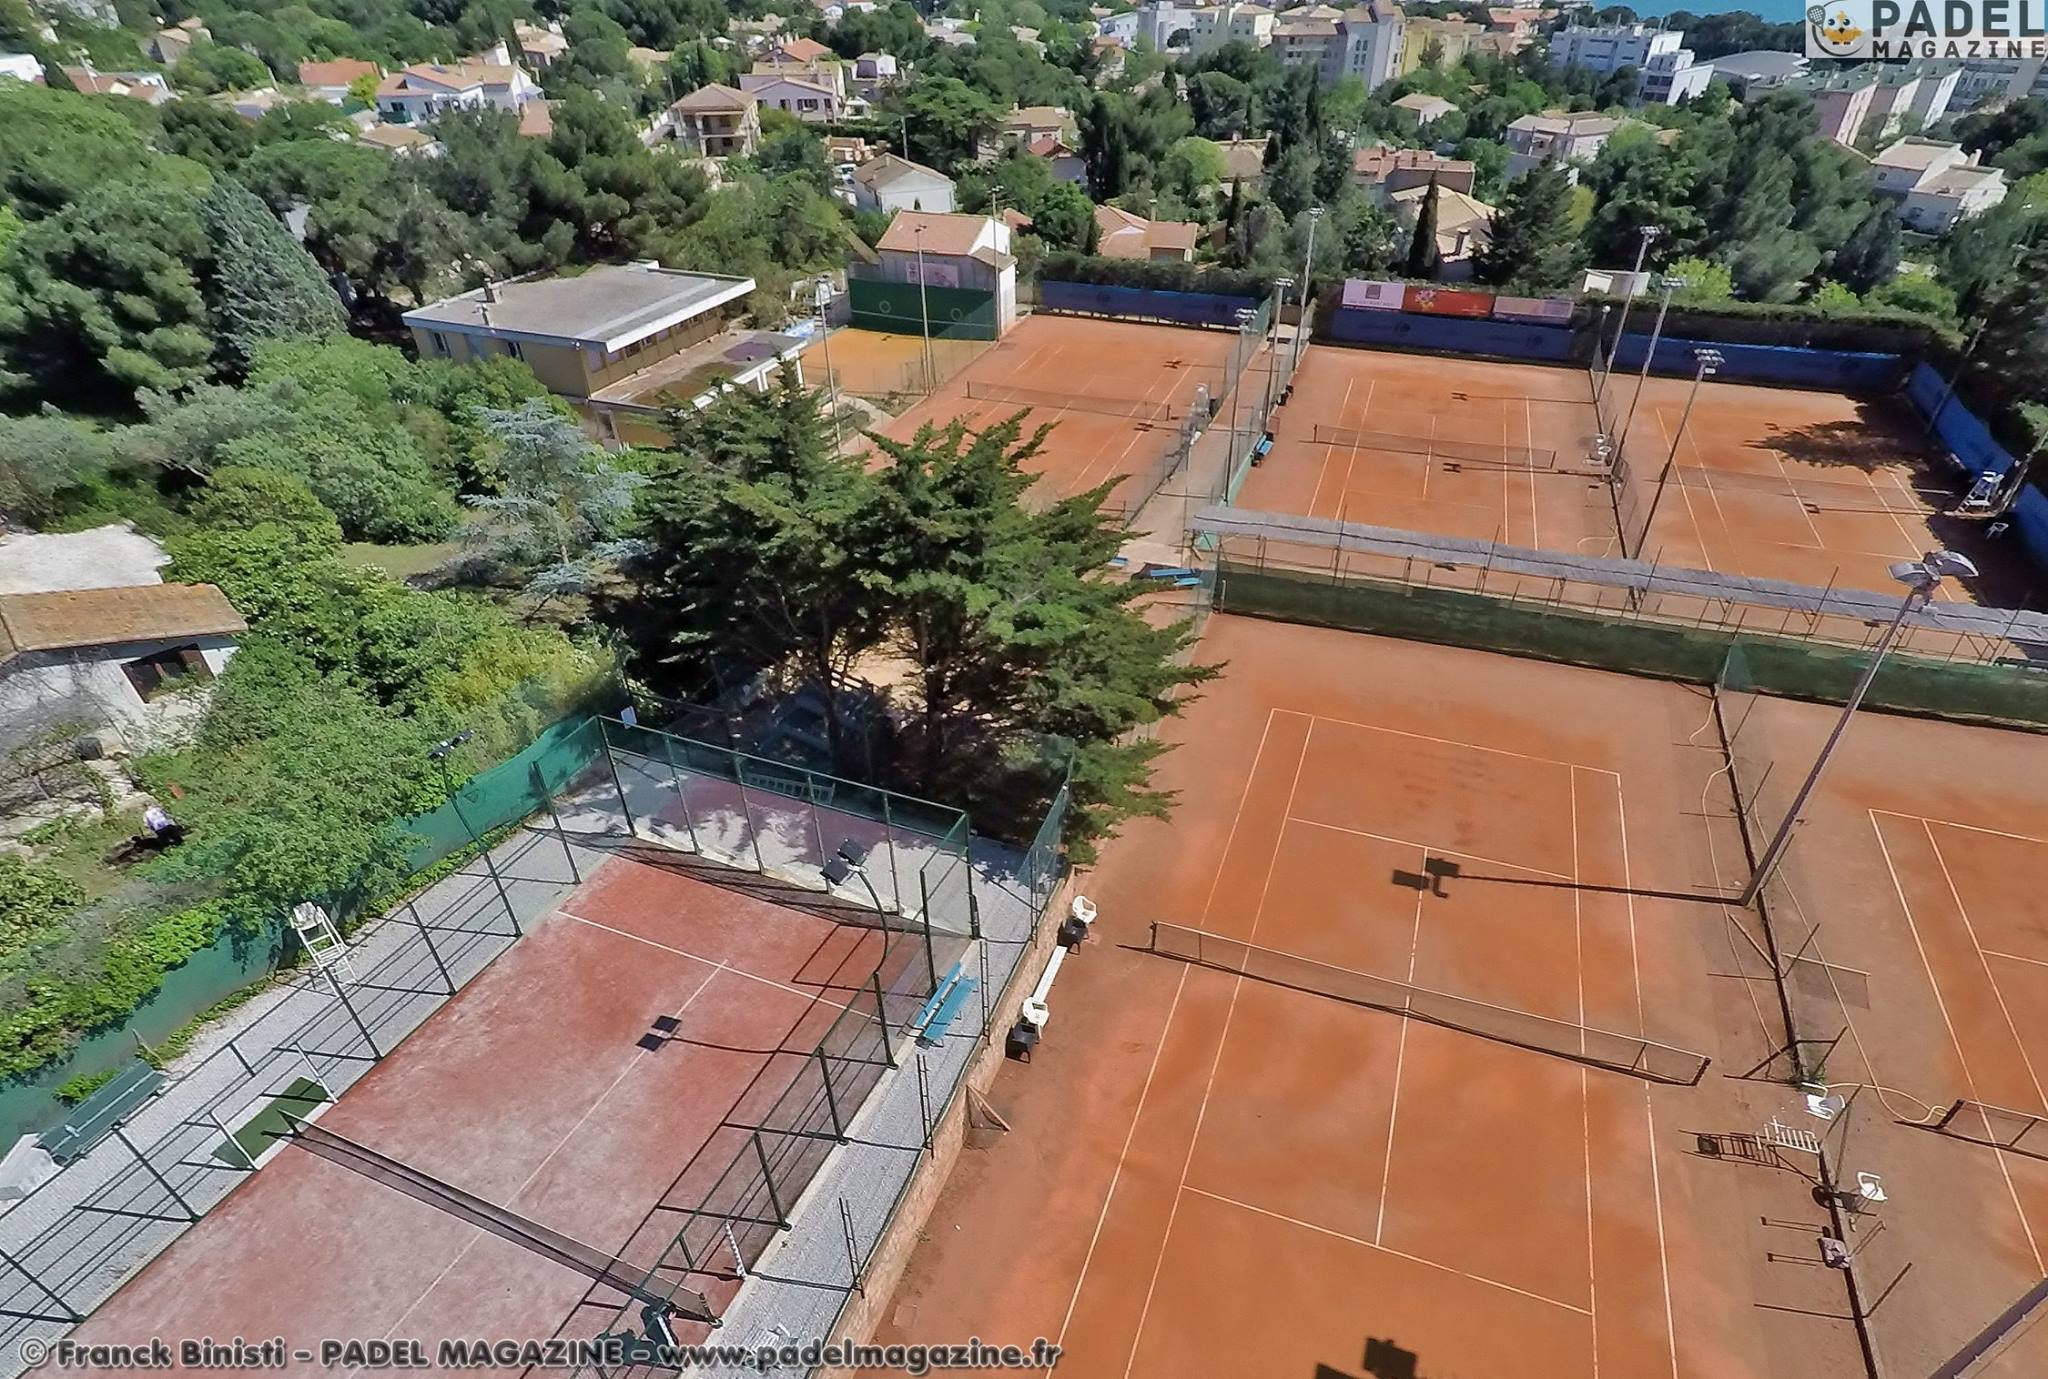 Le Tennis Club du Sète a l’ambition de faire plus